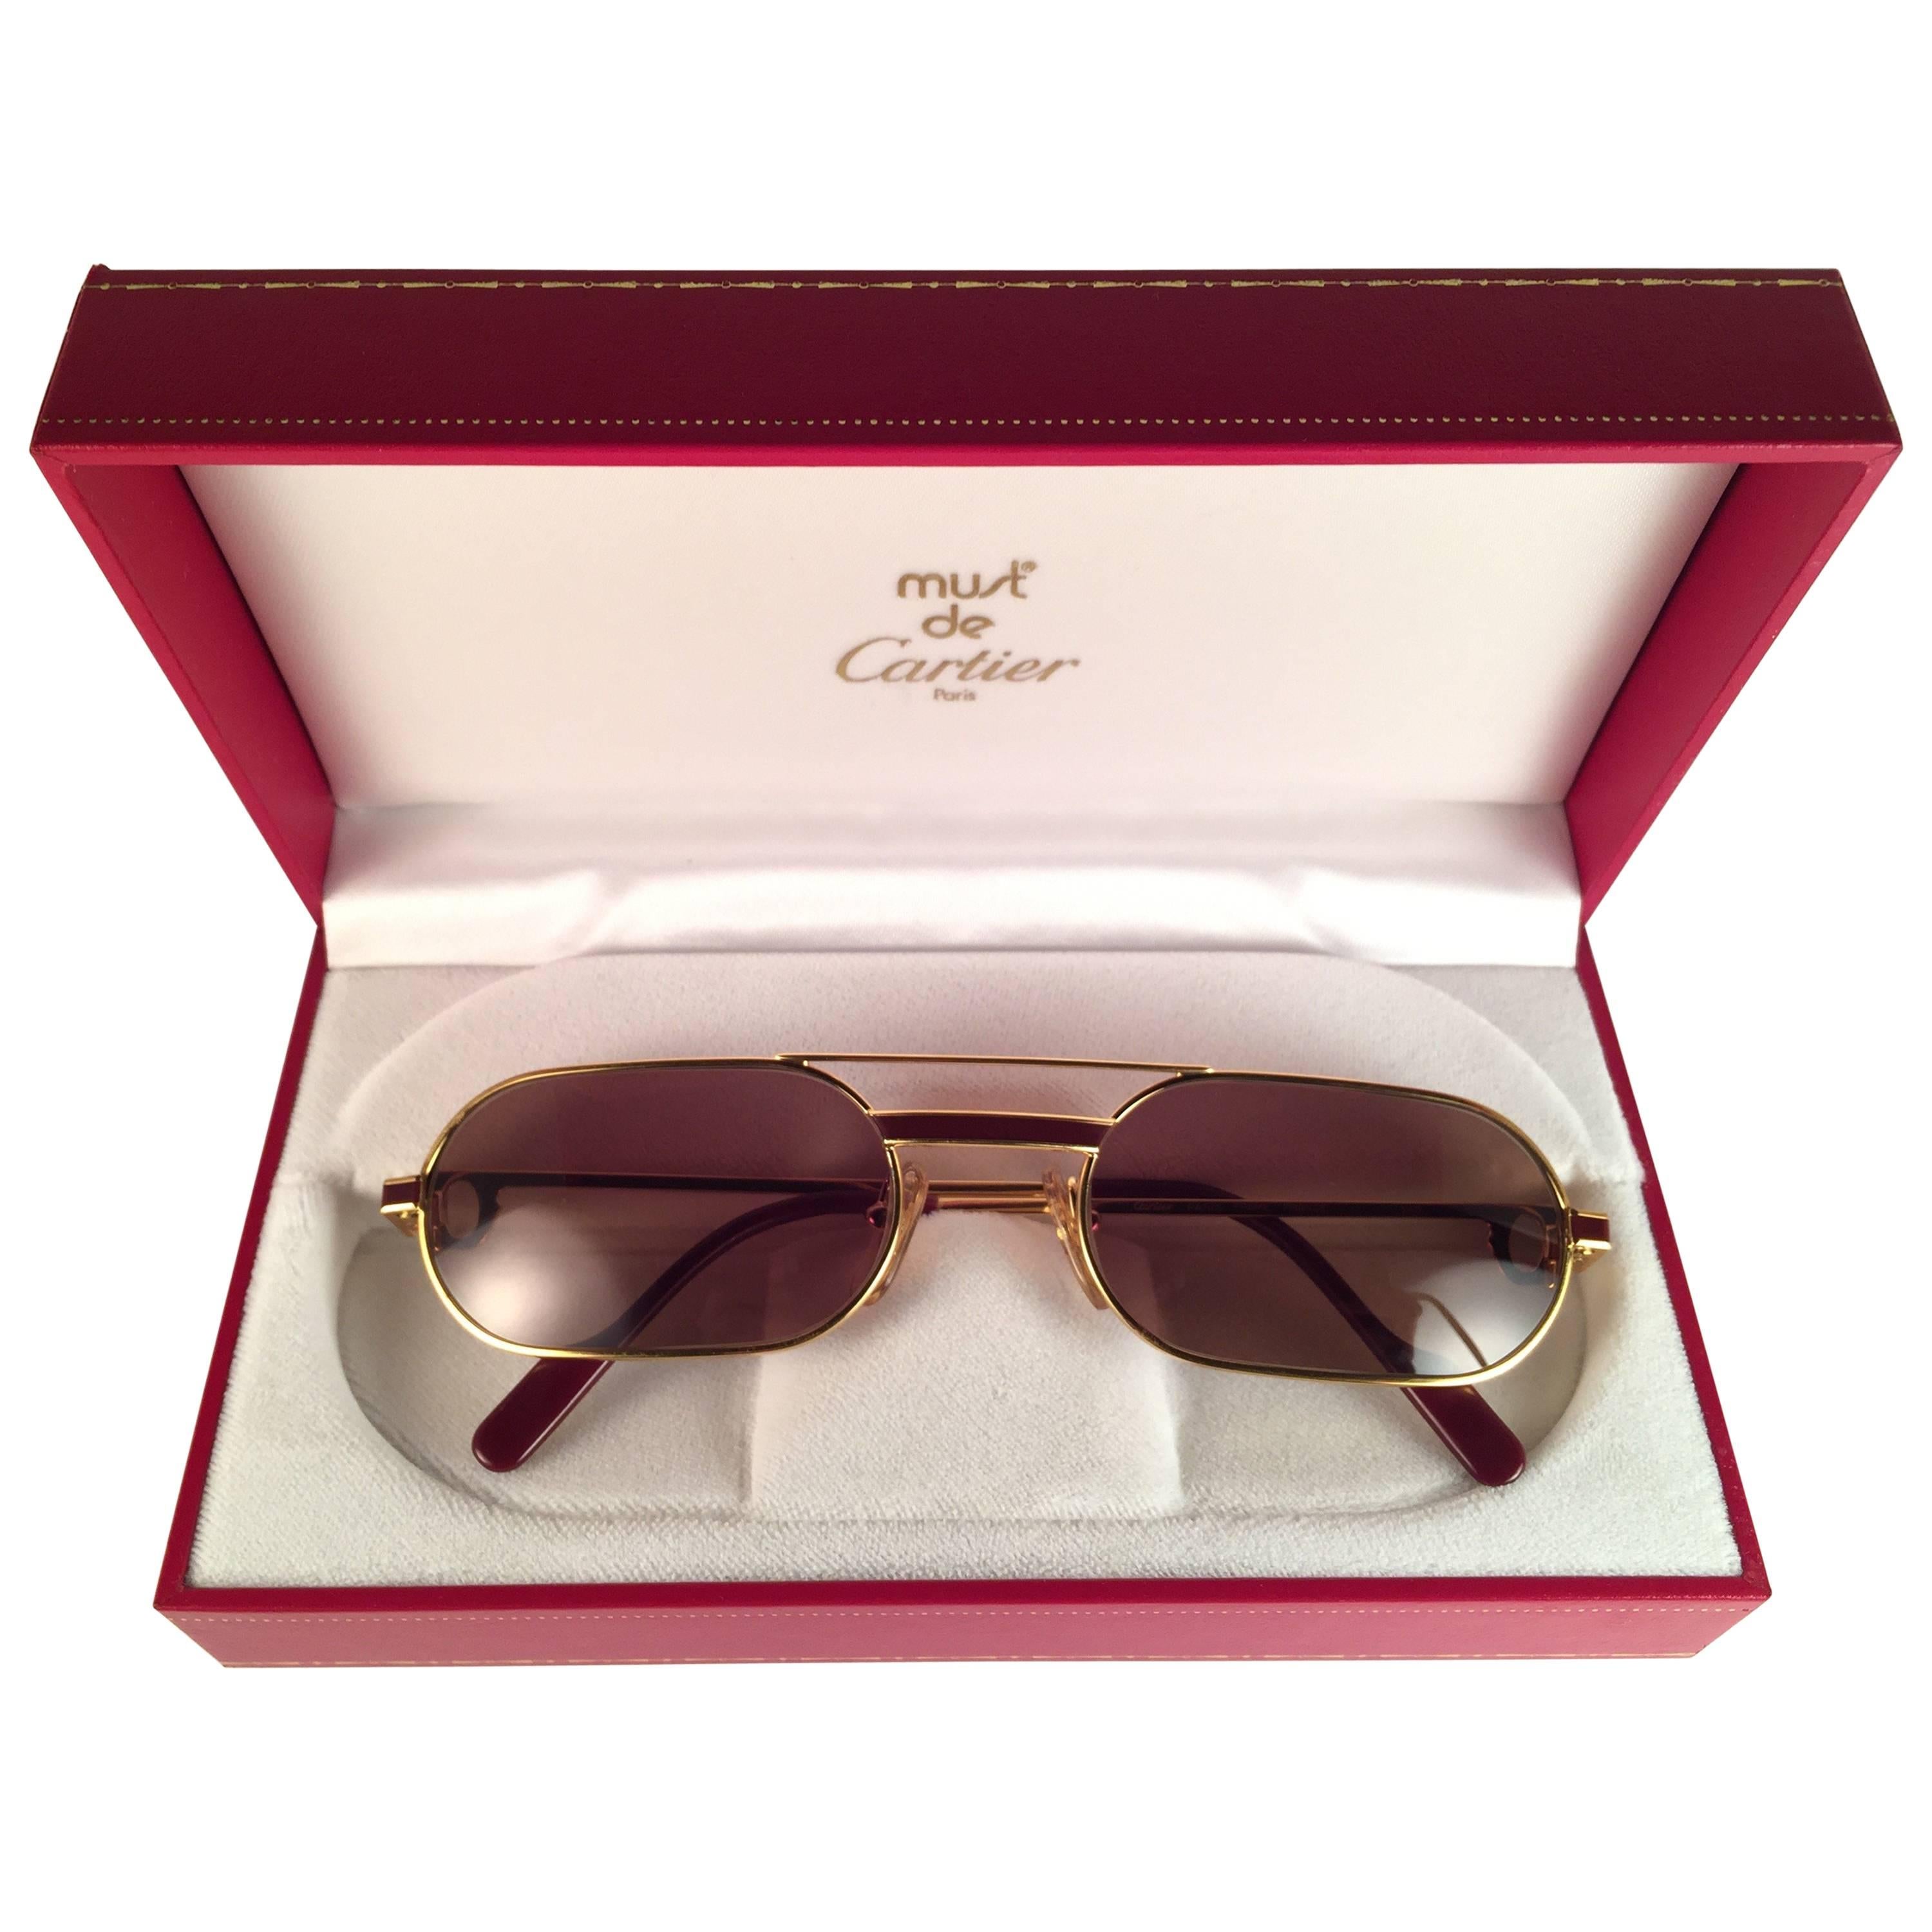 MINT Vintage Cartier Louis Laque De Chine Medium 53mm France Sunglasses For Sale